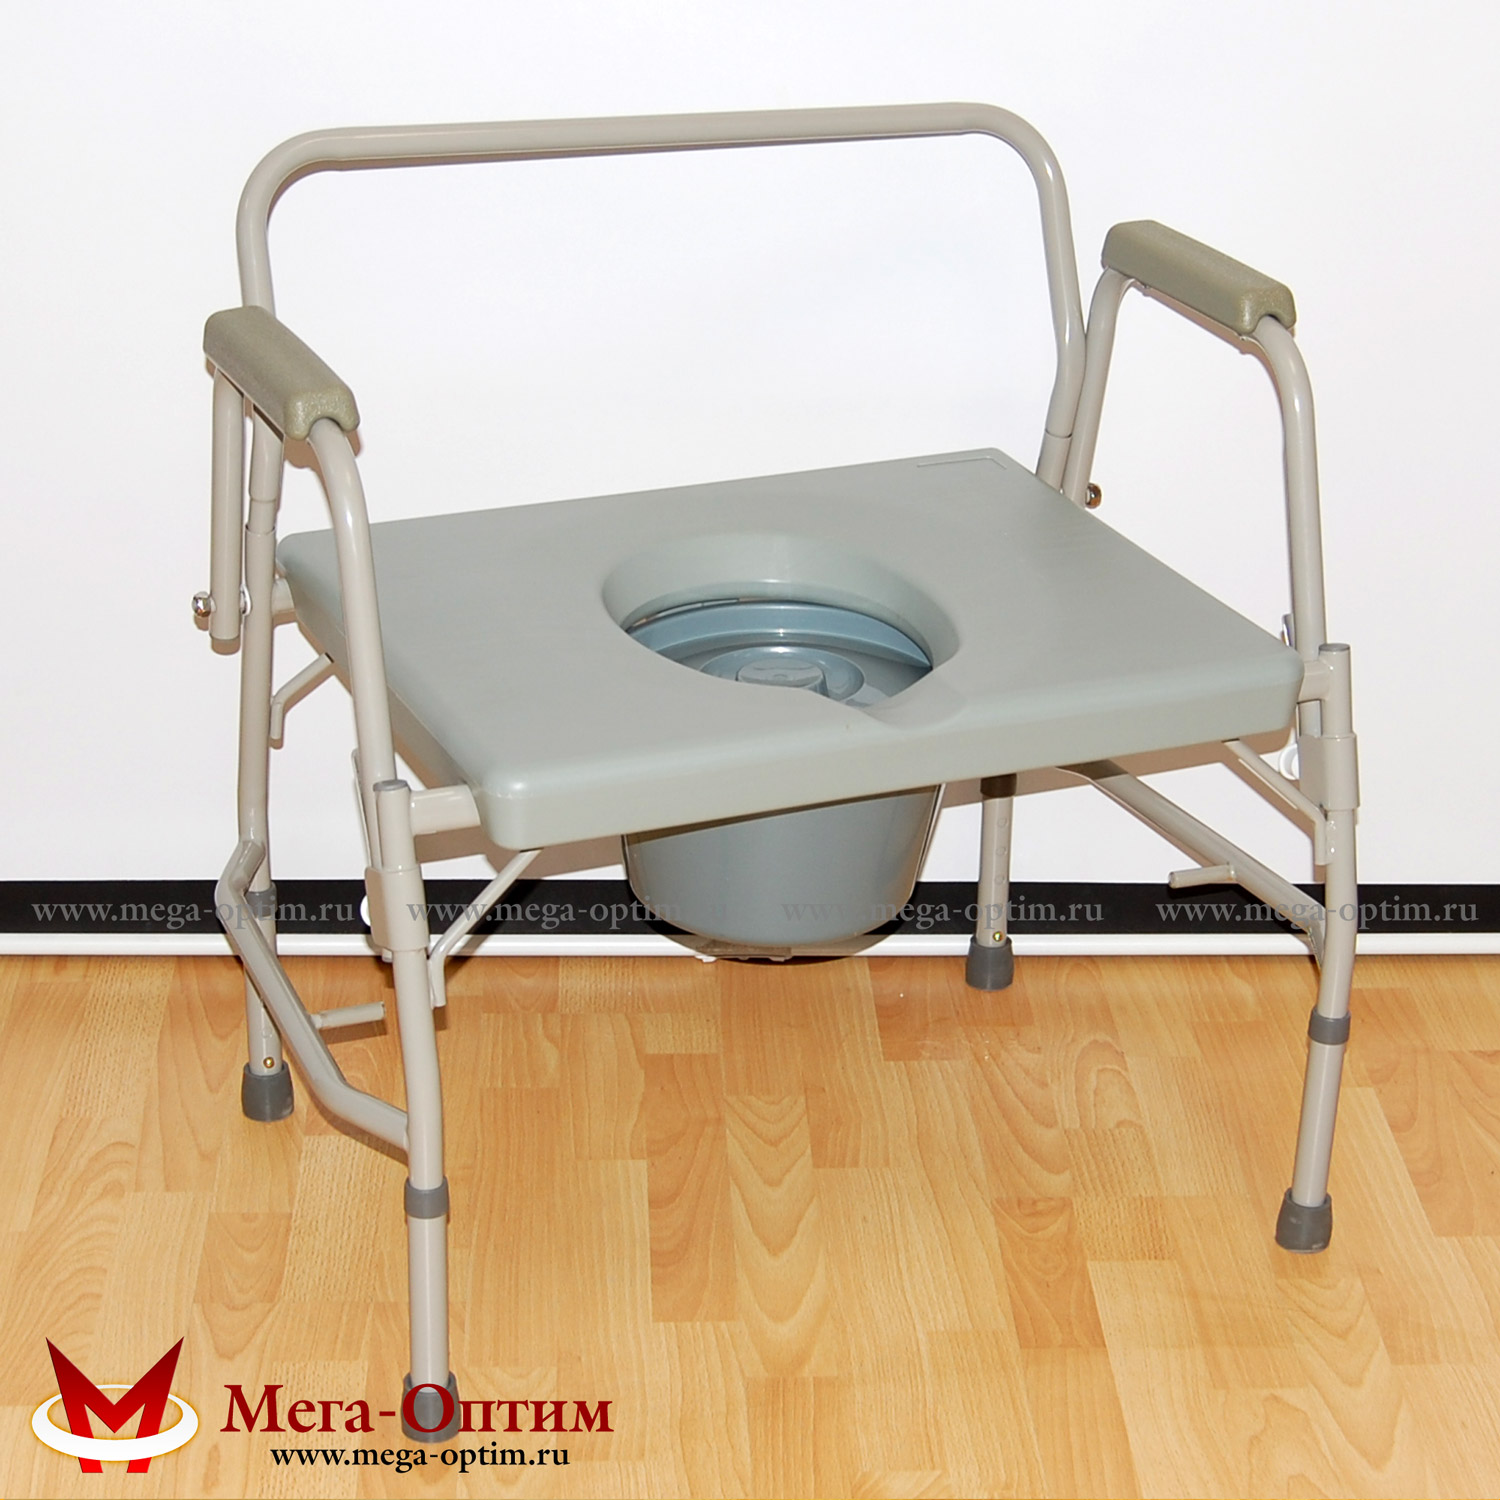 фото Кресло-стул с санитарным оснащением HMP 7012 от АО Липецкмедтехника